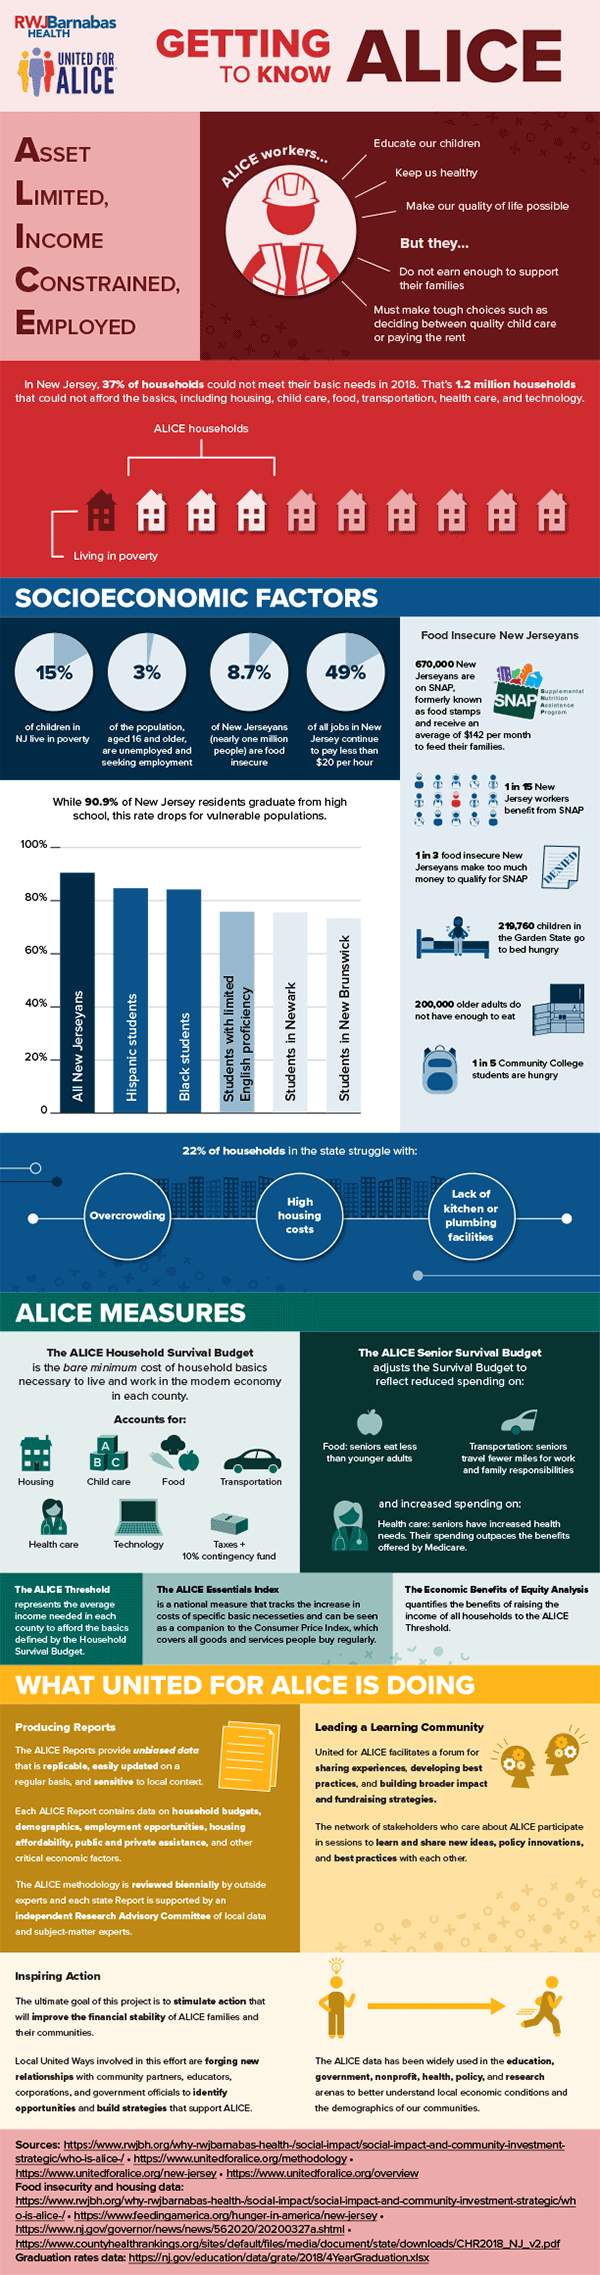 ALICE infographic